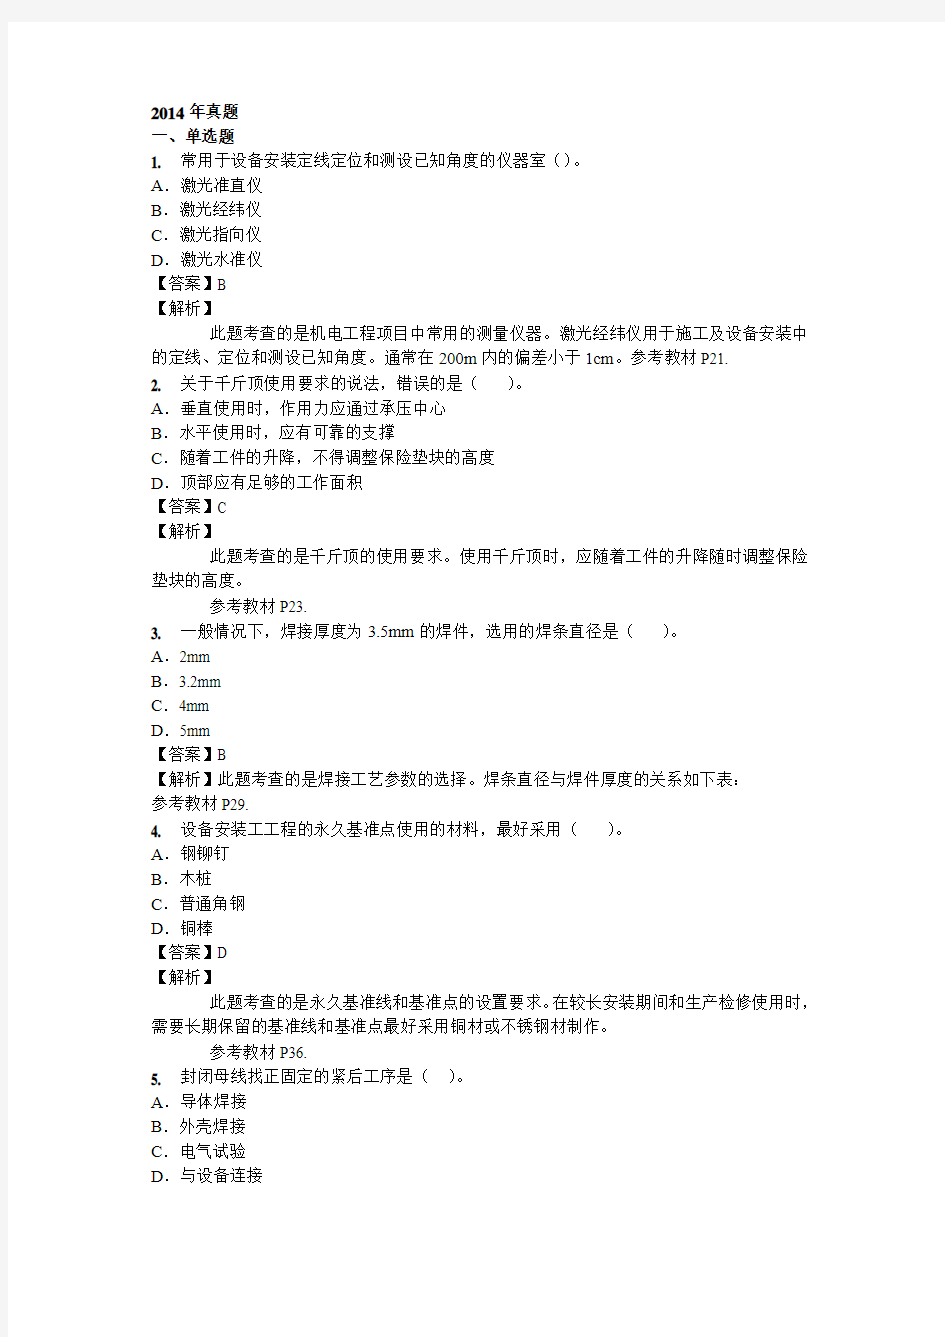 2014年二建机电真题解析-刘伏生-05.28